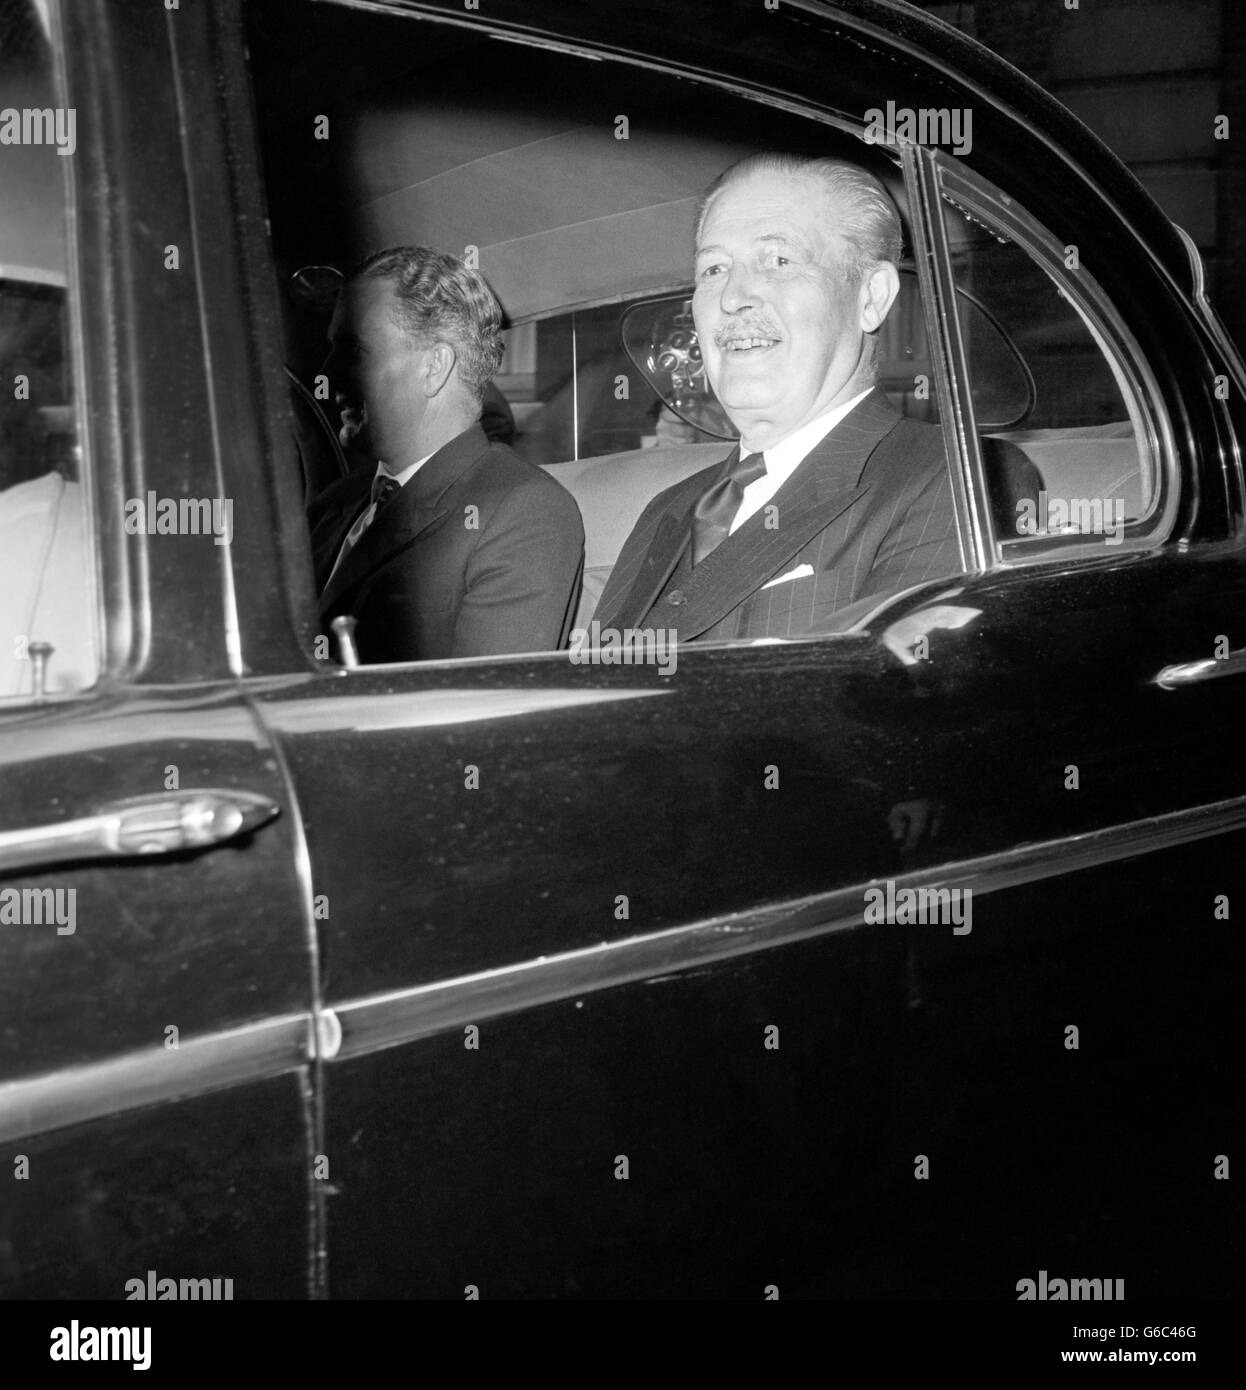 Politique - affaire Profumo - Le premier ministre Harold Macmillan - Admiralty House, Londres Banque D'Images